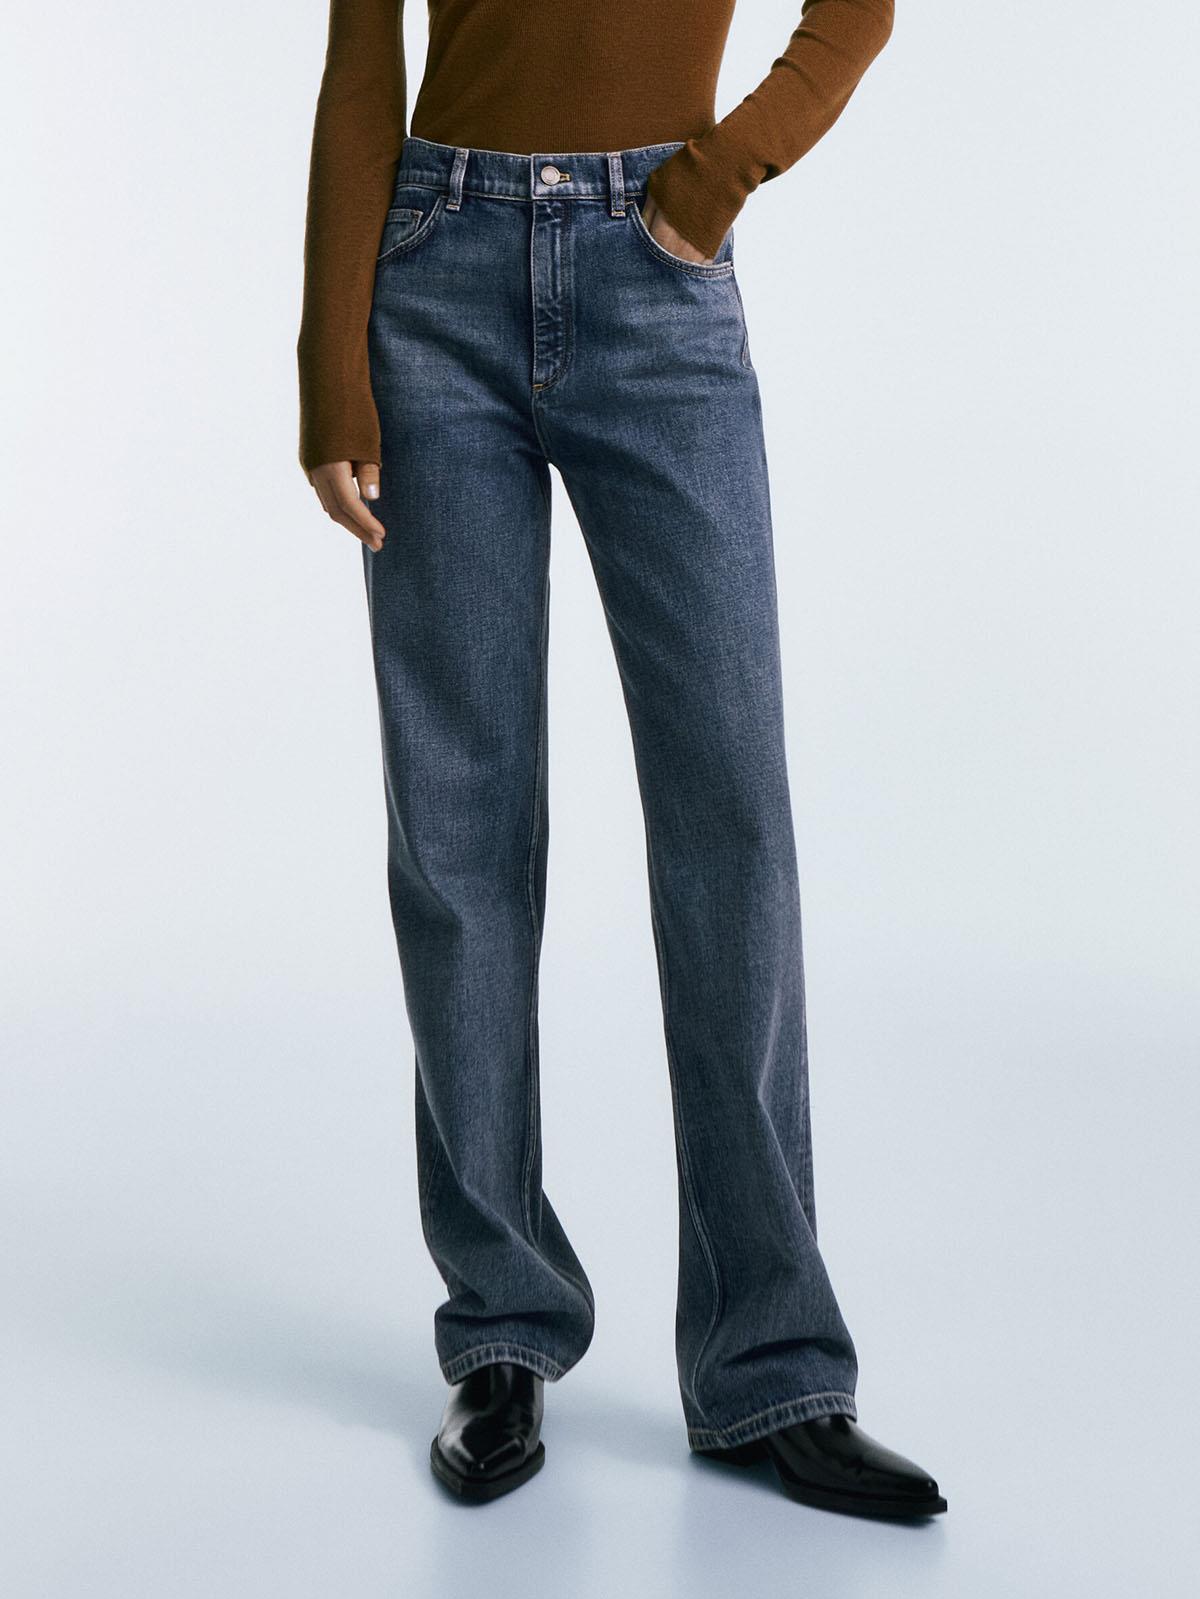 Jeans Massimo Dutti. Jeans de tiro alto y corte recto, de Massimo Dutti